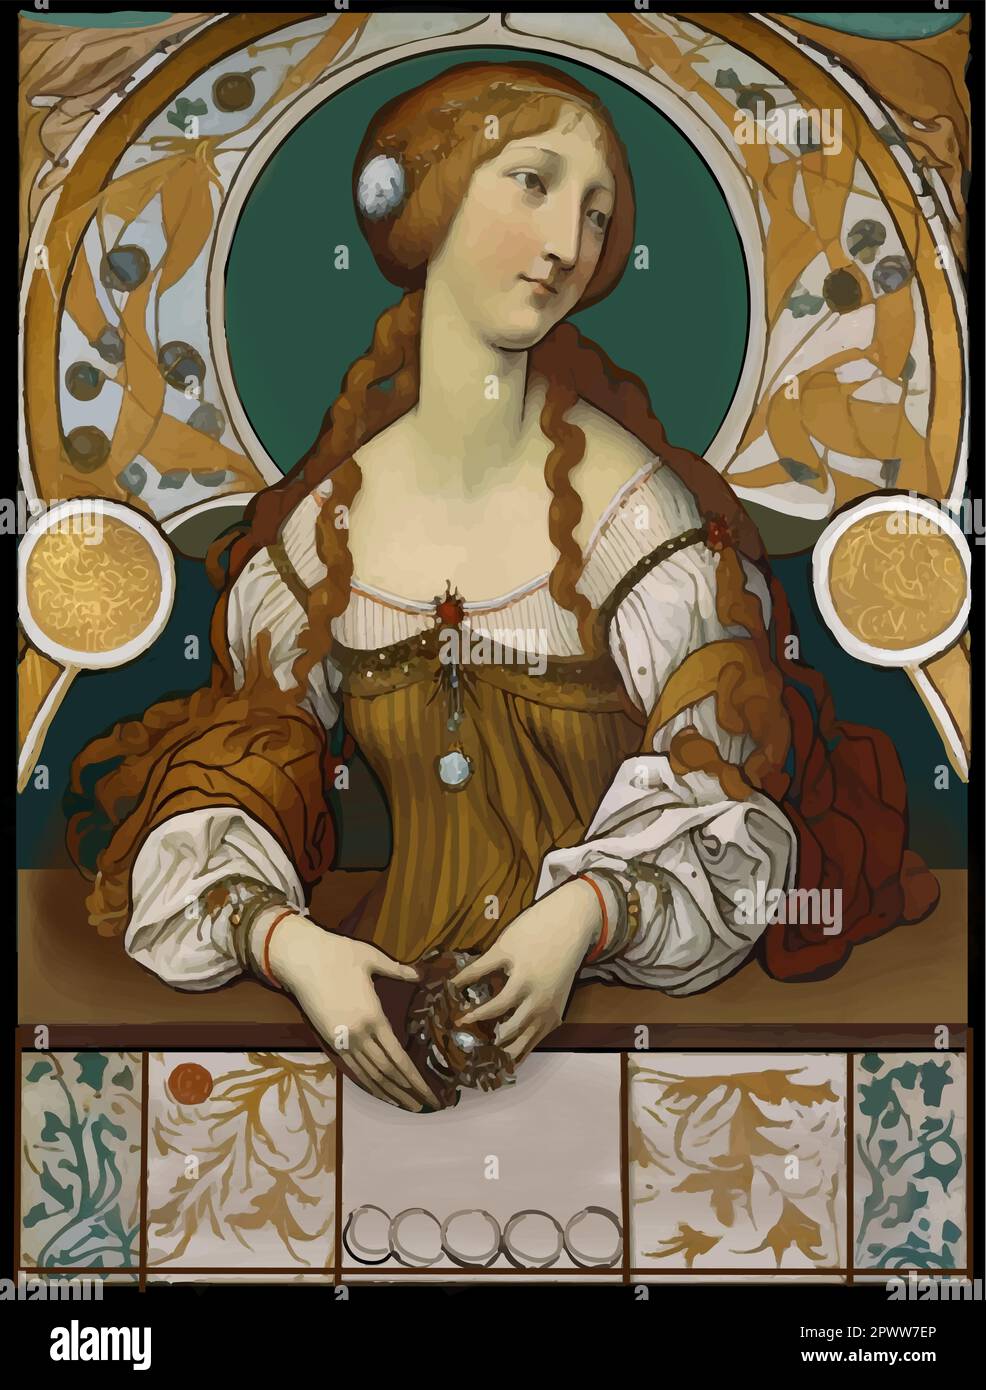 Femme à la Renaissance aux cheveux rouges, style Alphonse Mucha, art nouveau Illustration de Vecteur